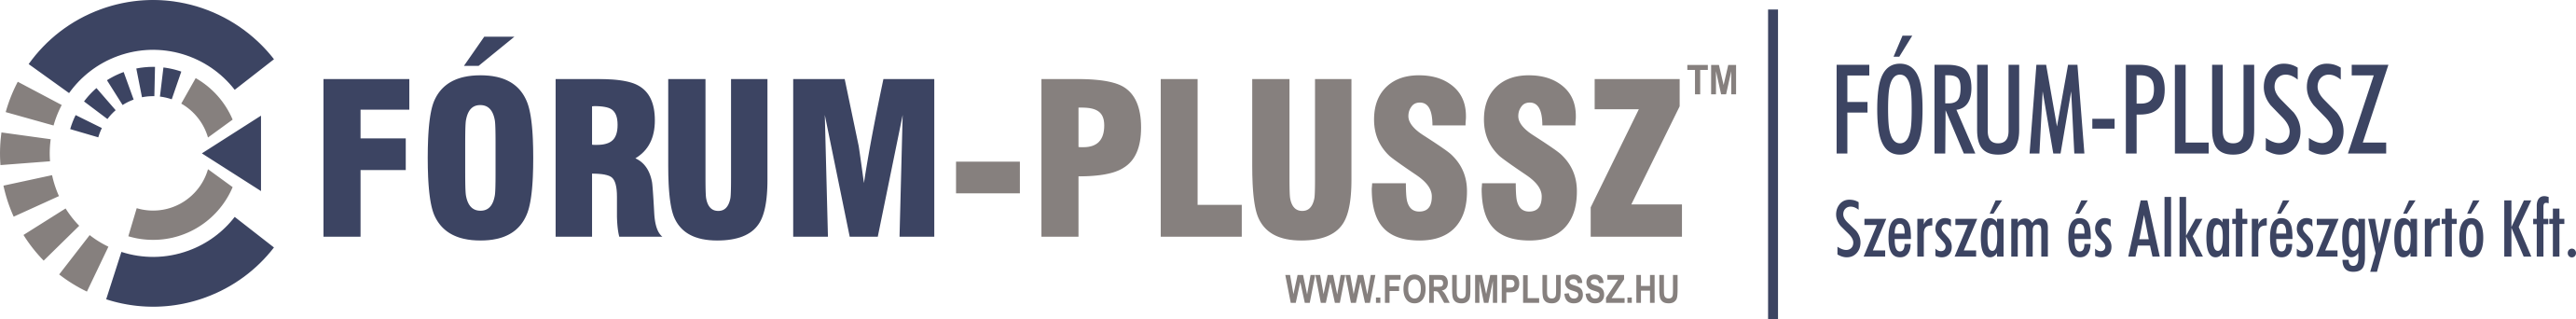 Fórum-Plussz Kft. - Szerszám készítés